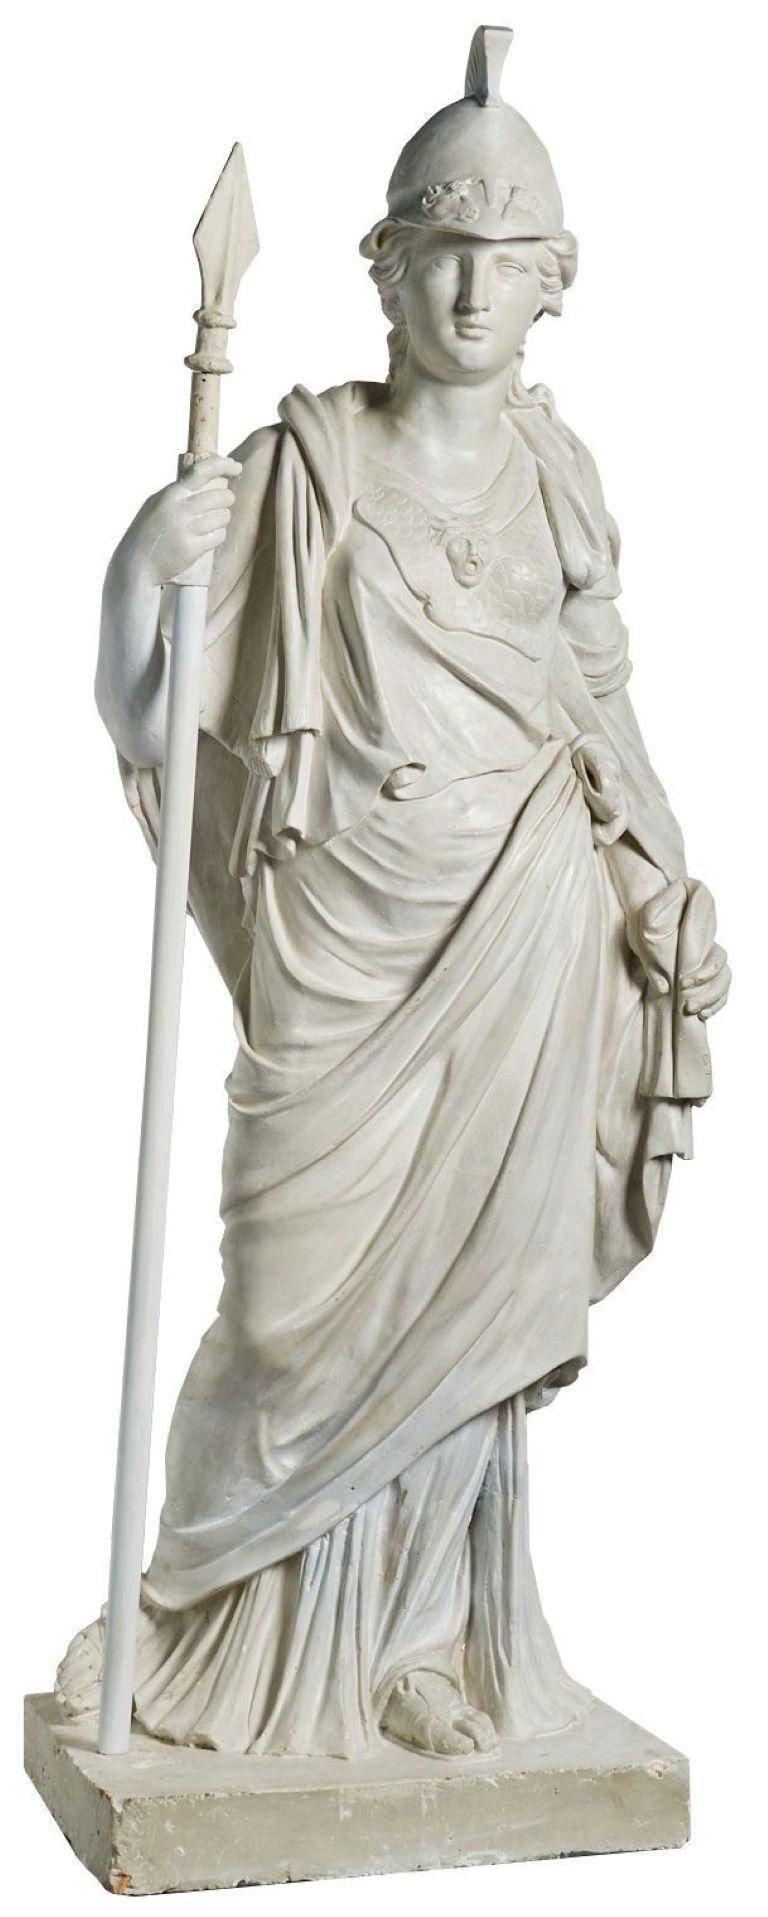 Antike lebensgroße Statue der Minerva. Eine bemalte Gipsfigur der Minerva, nach John Cheere. John Cheere war ein englischer Bildhauer, der in London geboren wurde und der Bruder des Bildhauers Sir Henry Cheere war. Dieses Modell der Minerva wurde